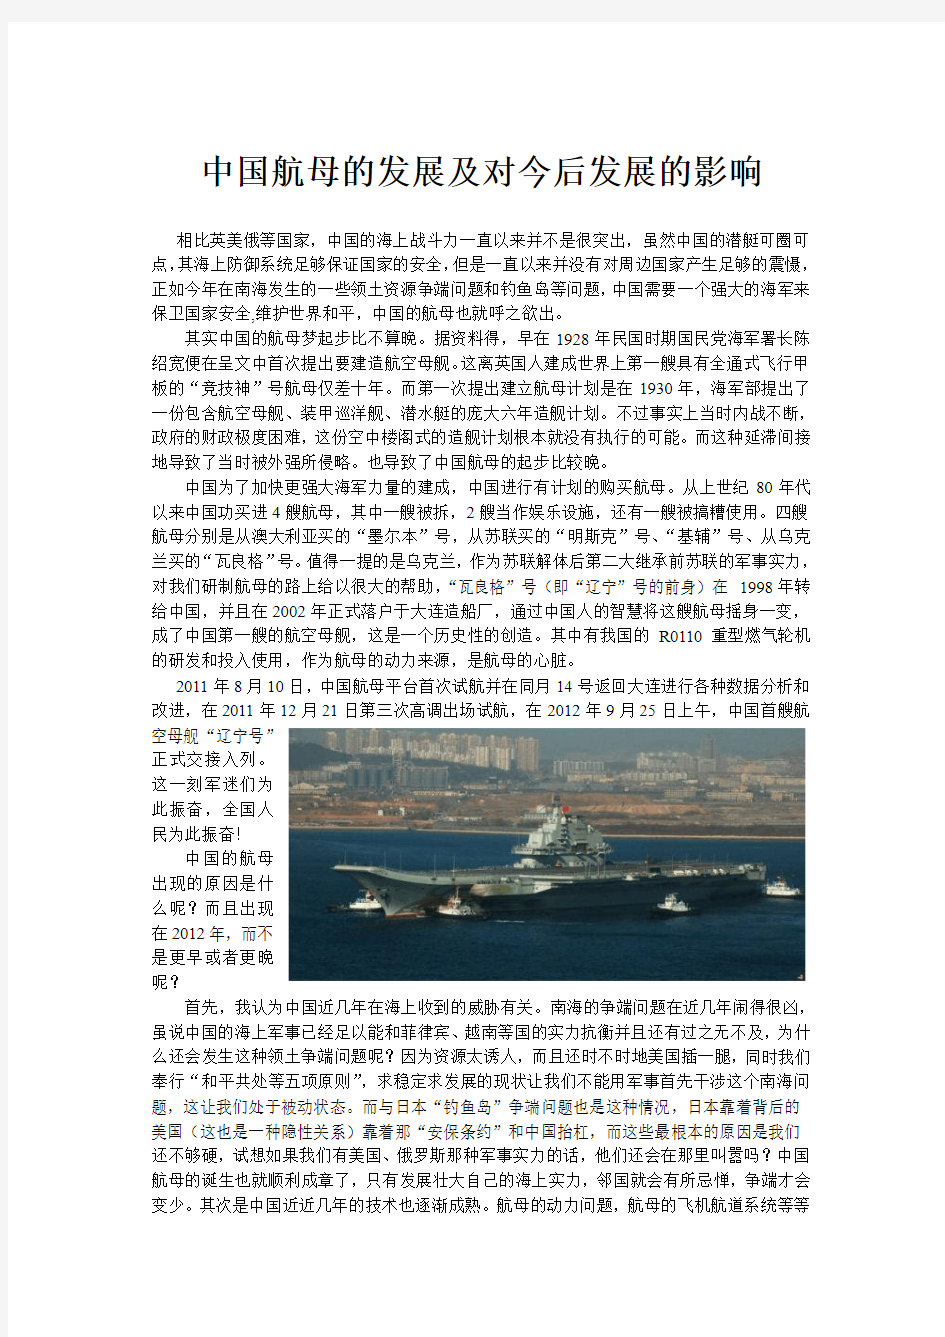 中国航母的发展及对今后发展的影响